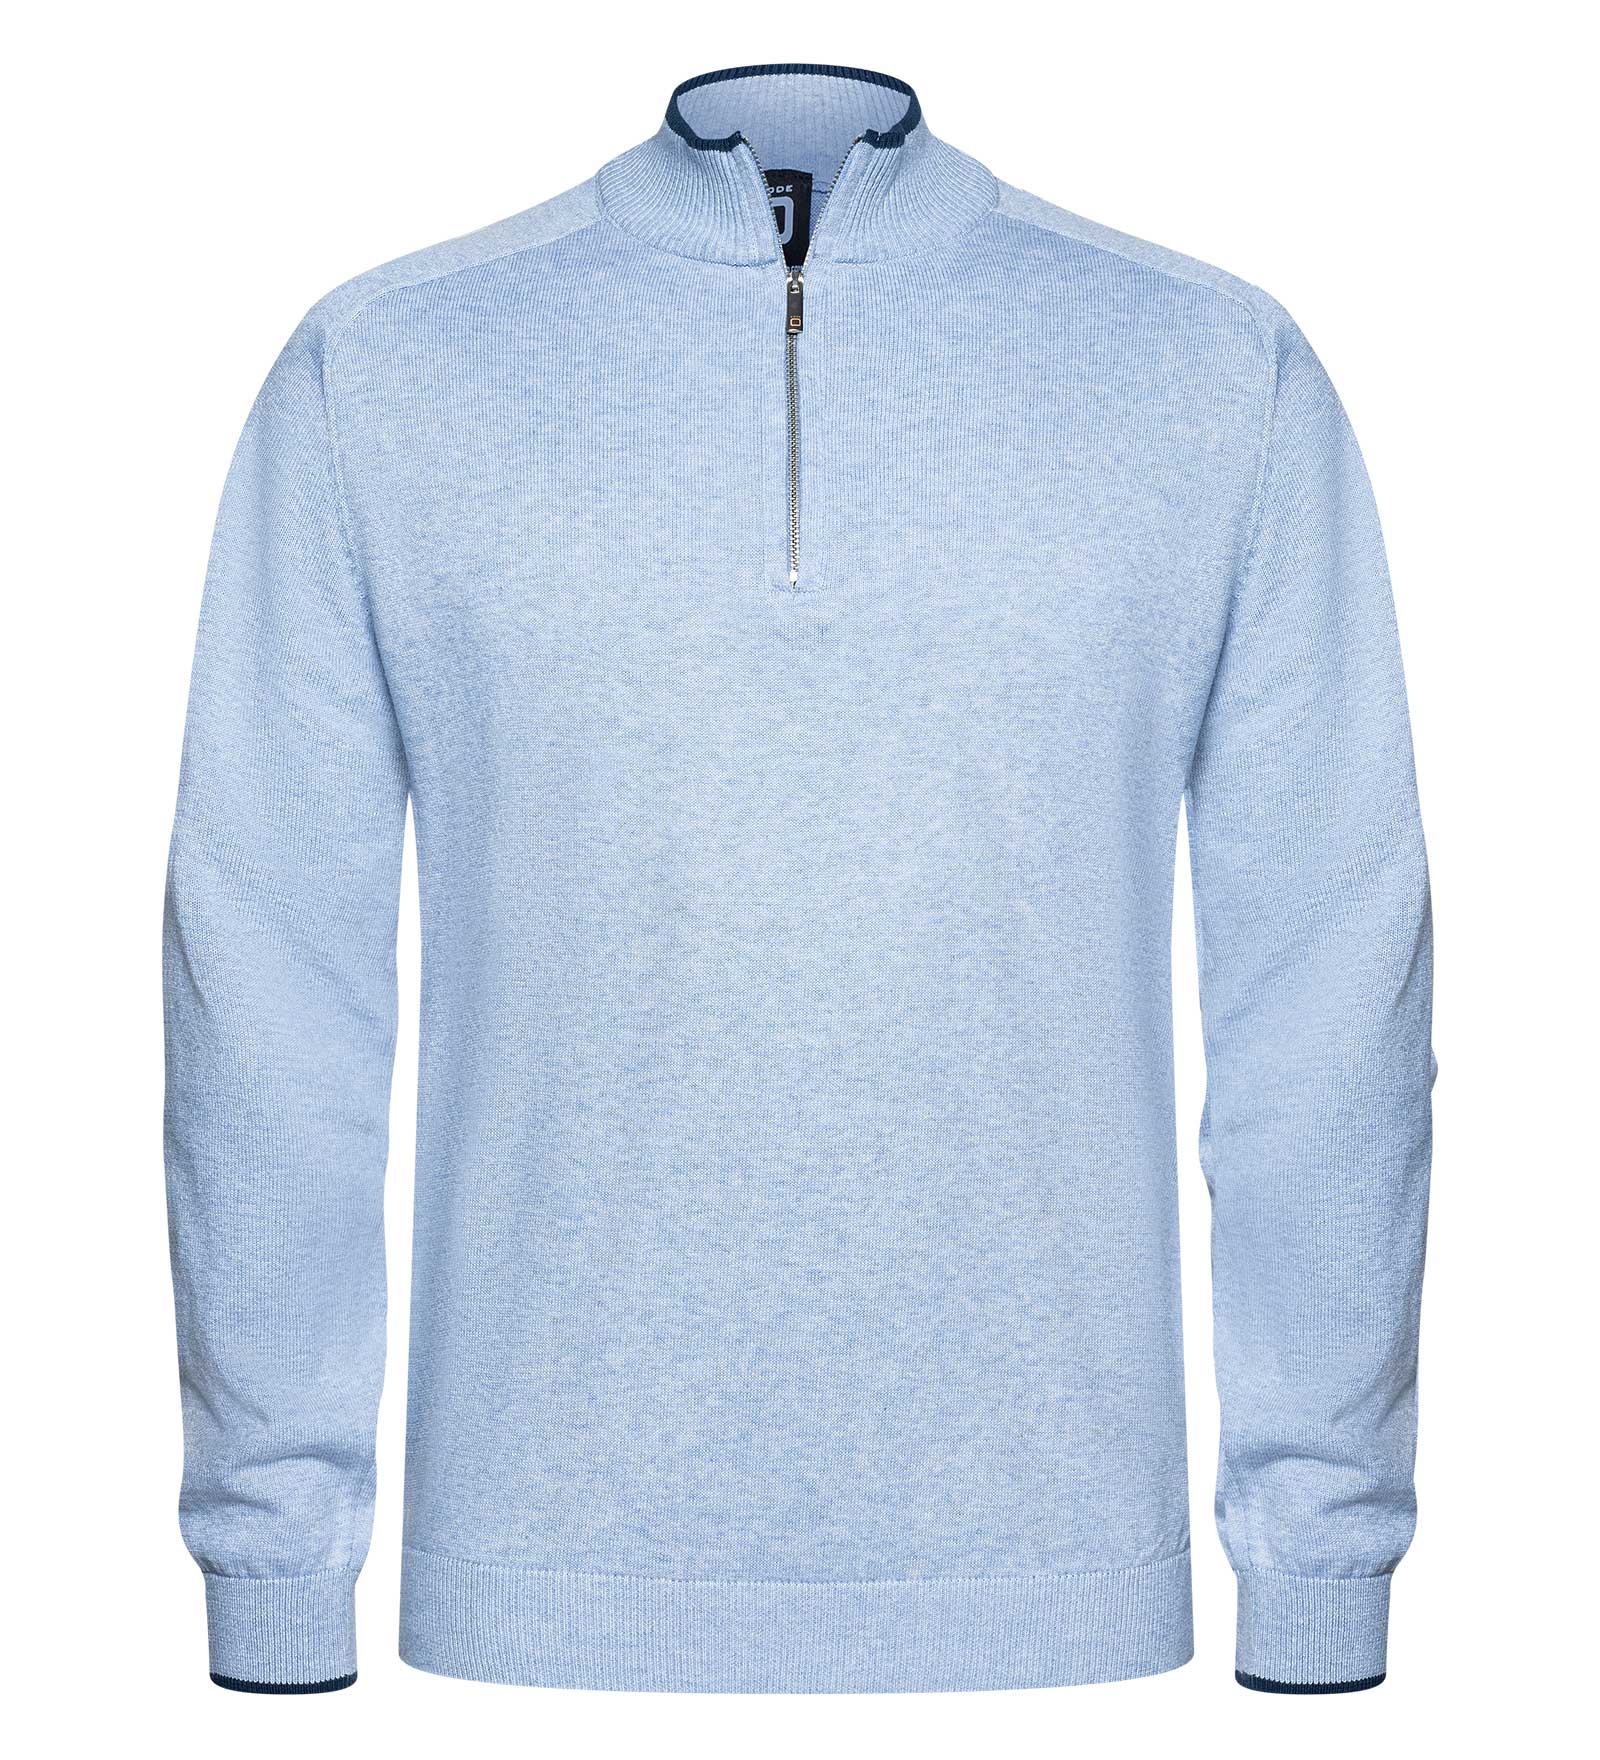 CODE-ZERO Half-Zip Sweater Men Rigging Blue L